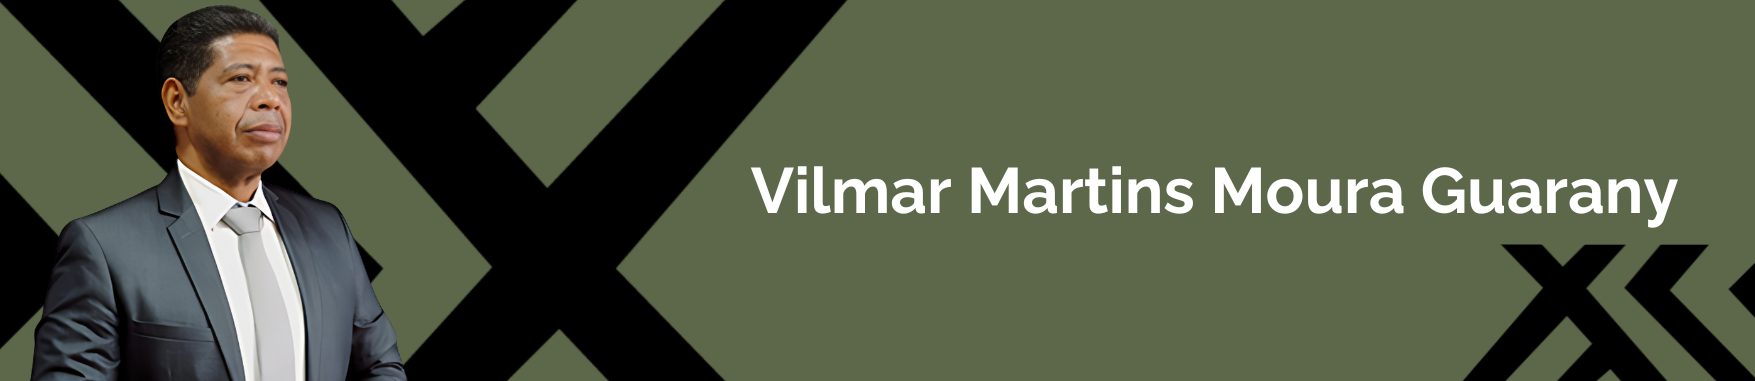 Vilmar Martins Moura Guarany